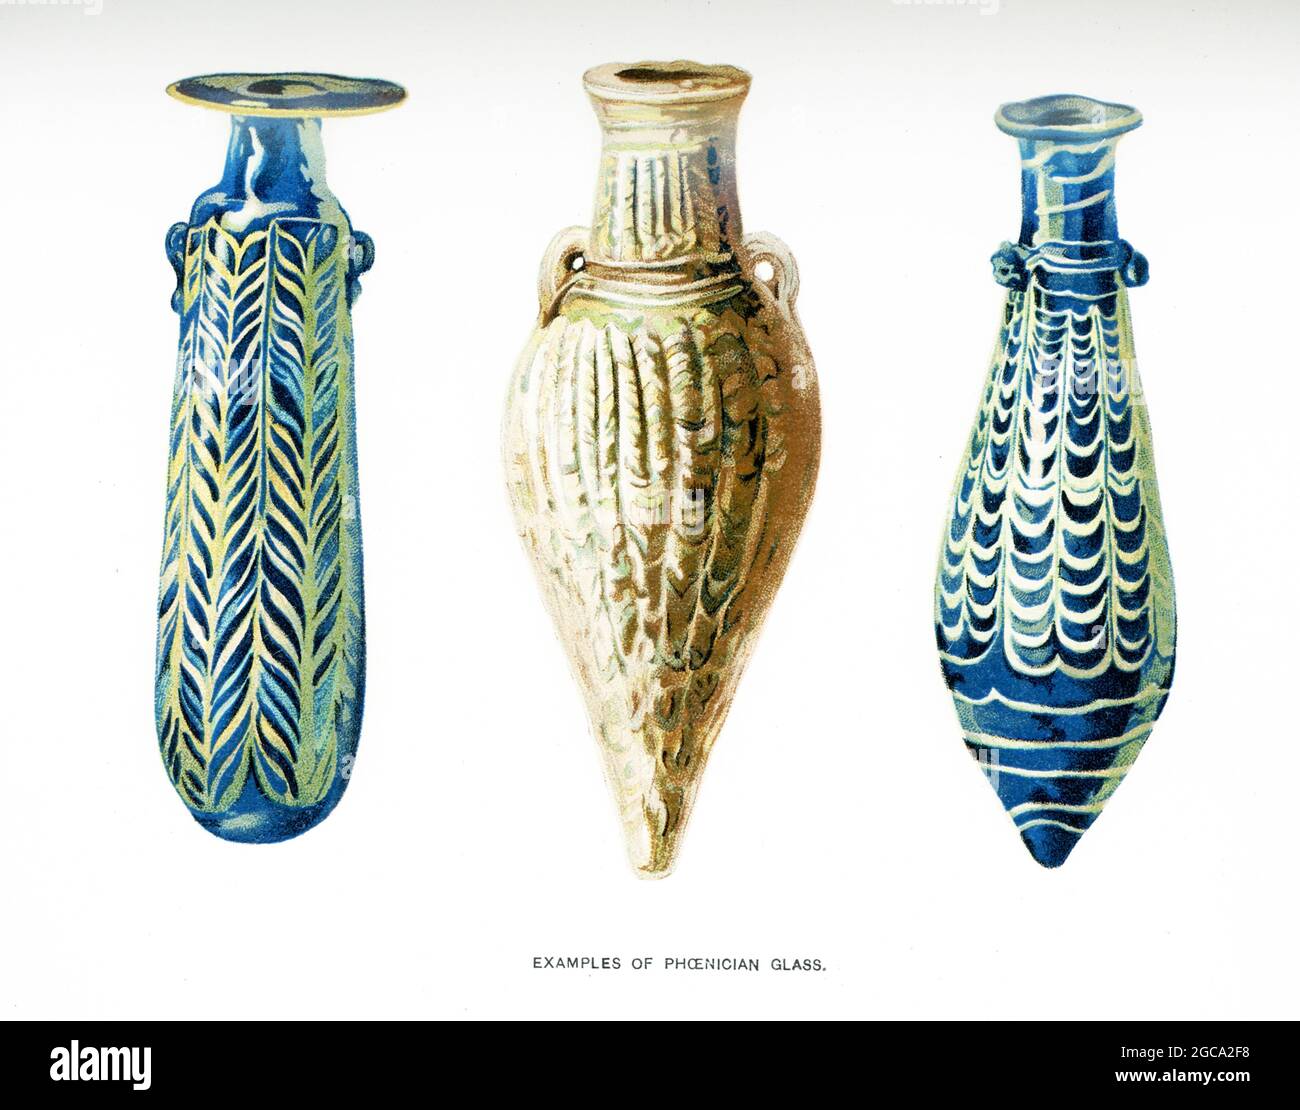 La légende accompagnant cette illustration de 1903 dans le livre de Gaston Maspero sur l’histoire de l’Égypte est la suivante : « exemples de verre phénicien ». Banque D'Images